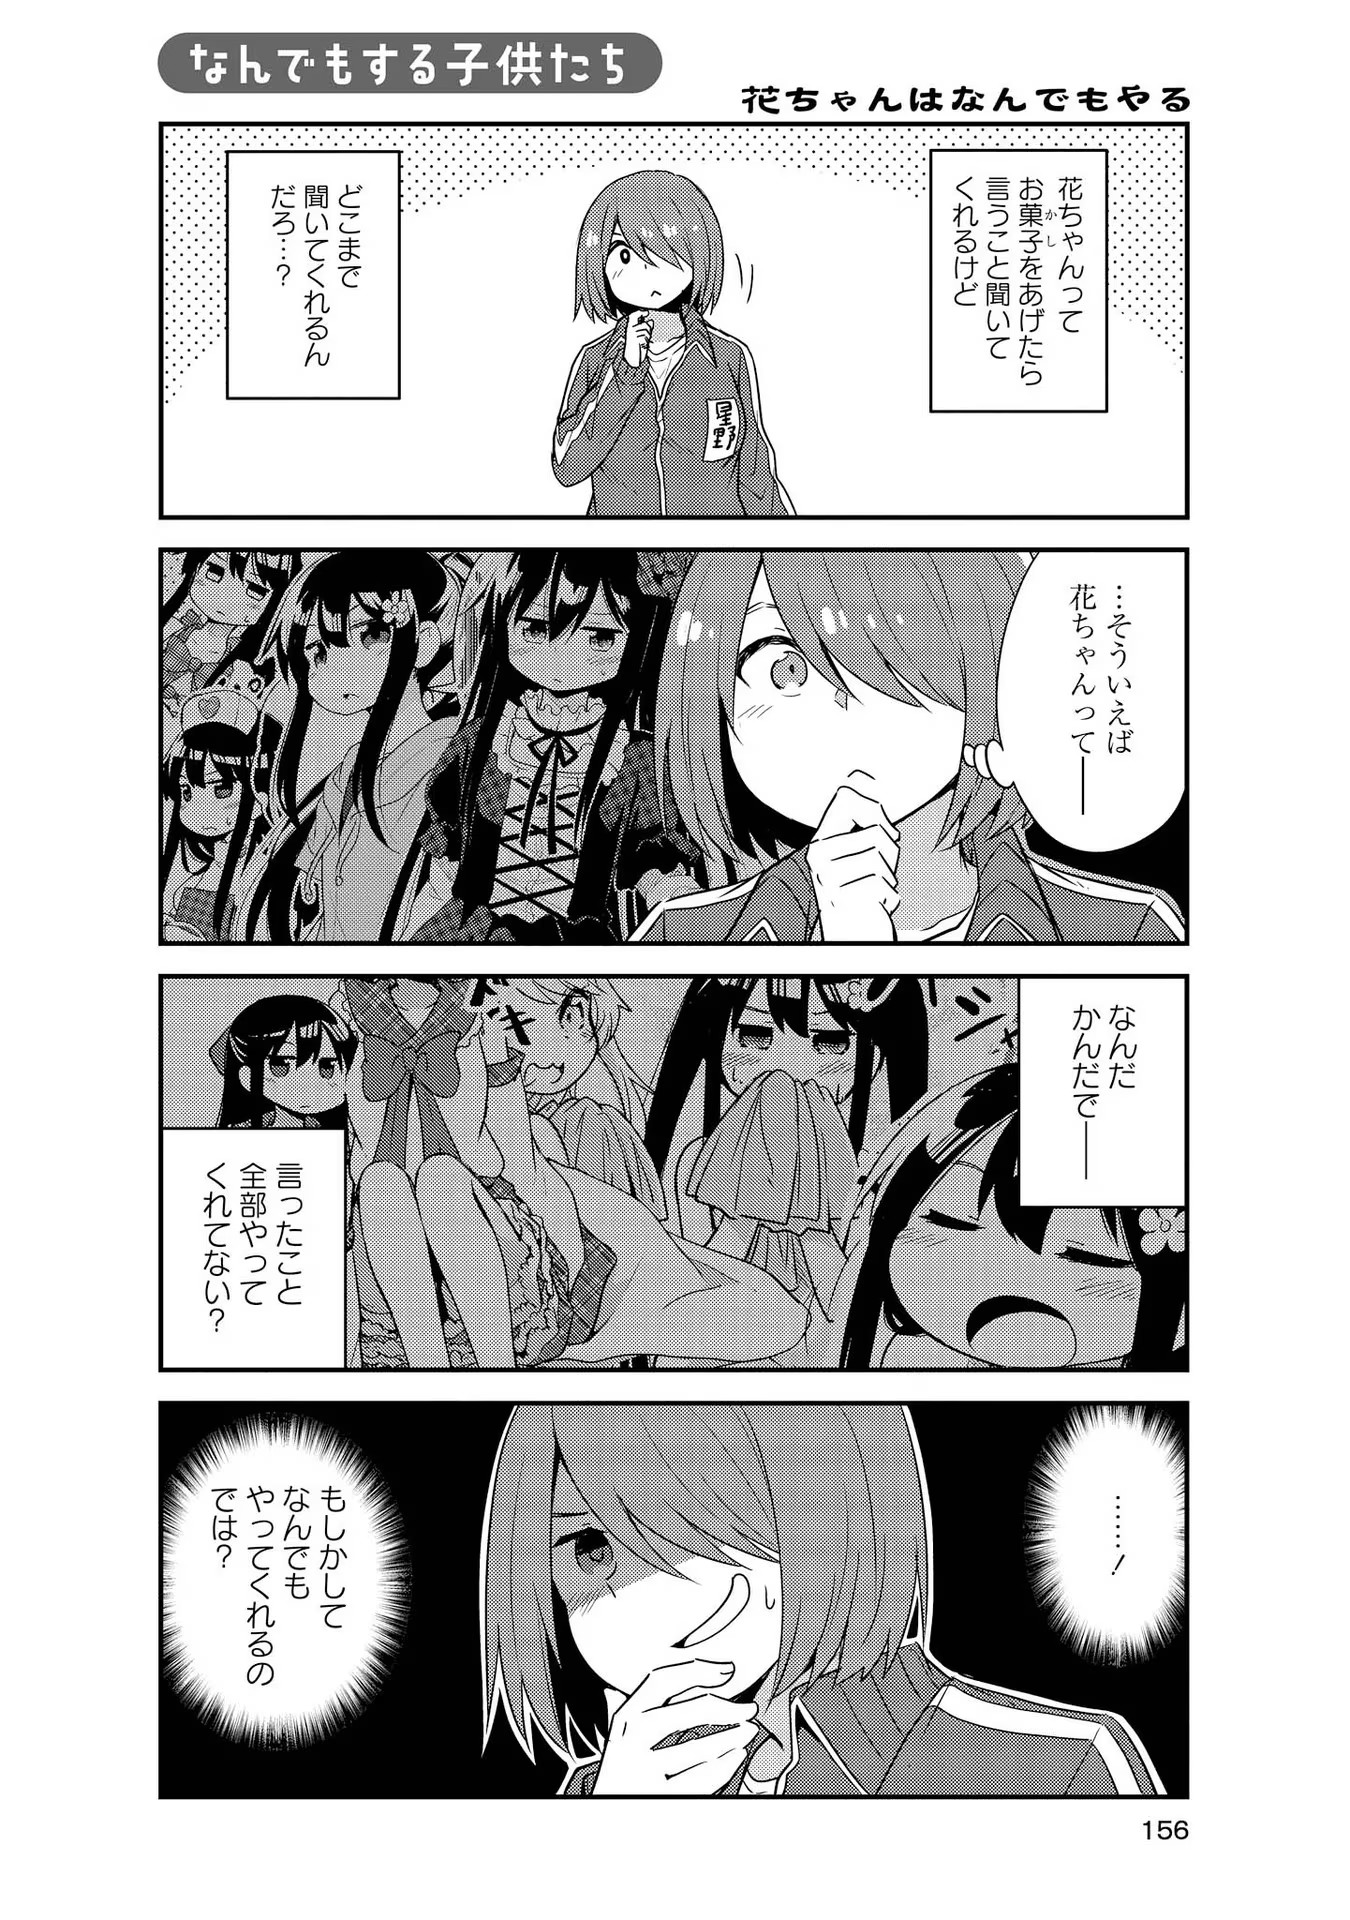 Watashi ni Tenshi ga Maiorita! - Chapter 29.5 - Page 1